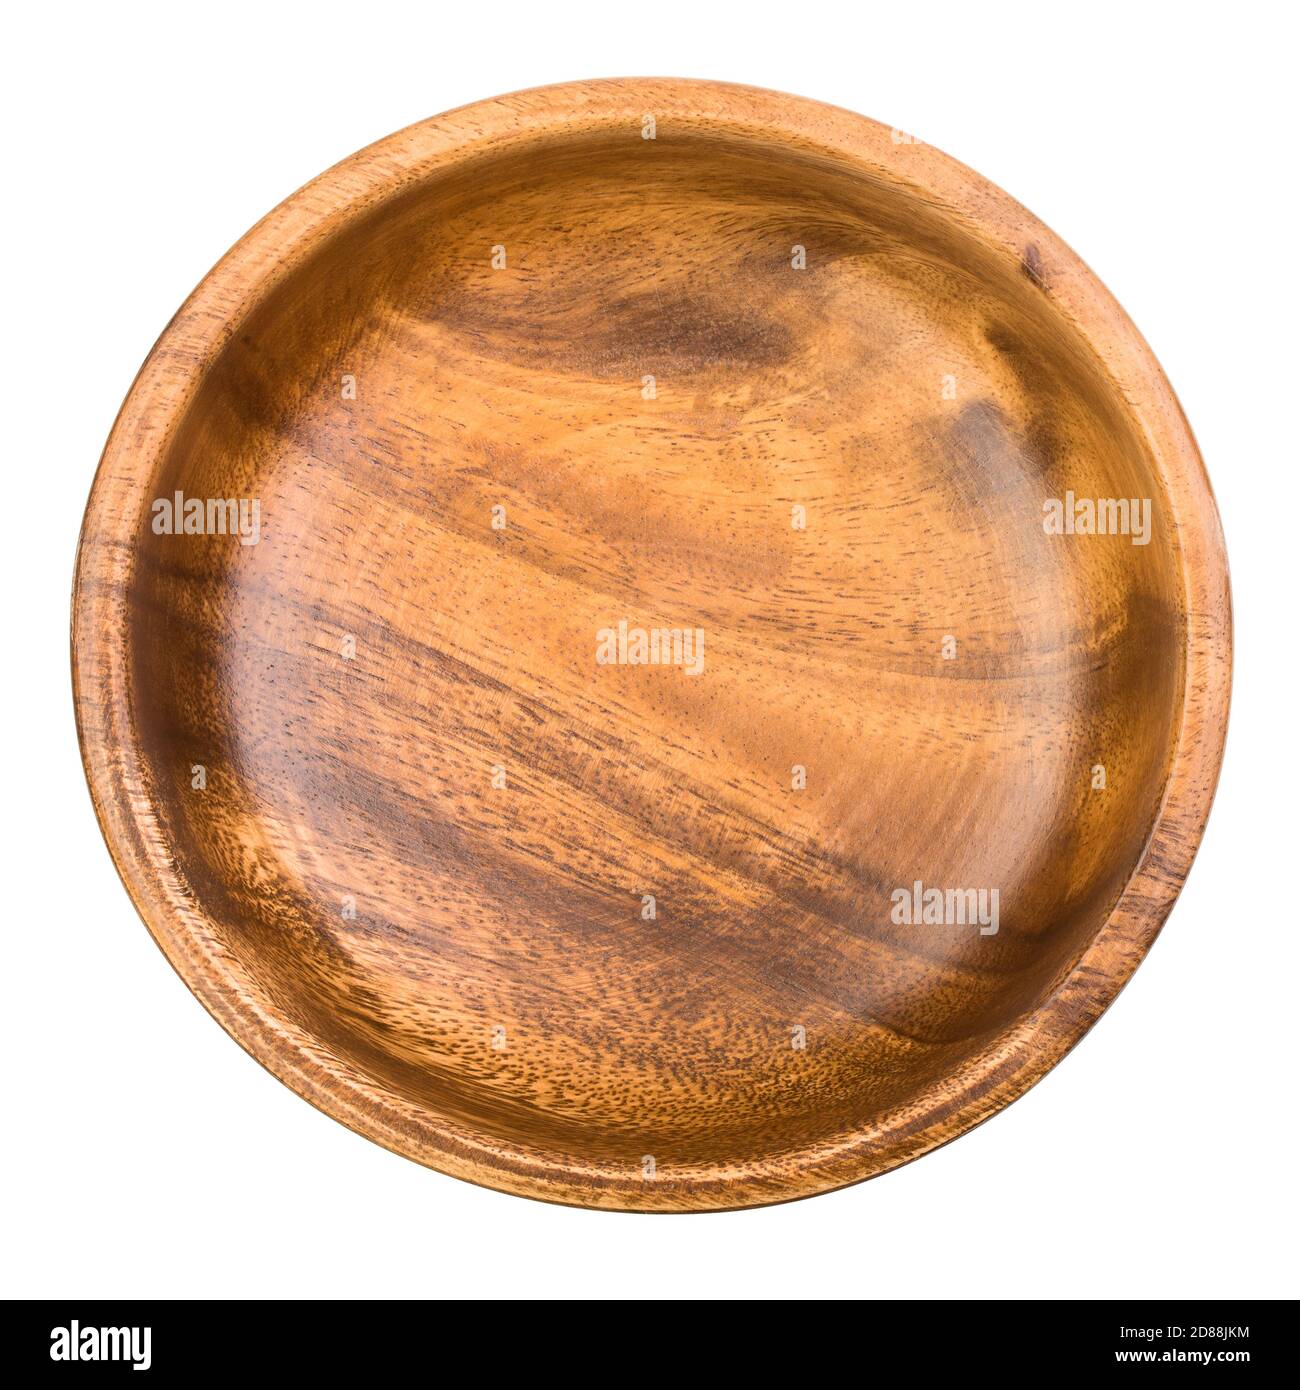 piatto di legno, ciotola, isolato su fondo bianco, percorso di ritaglio, profondità di campo completa Foto Stock